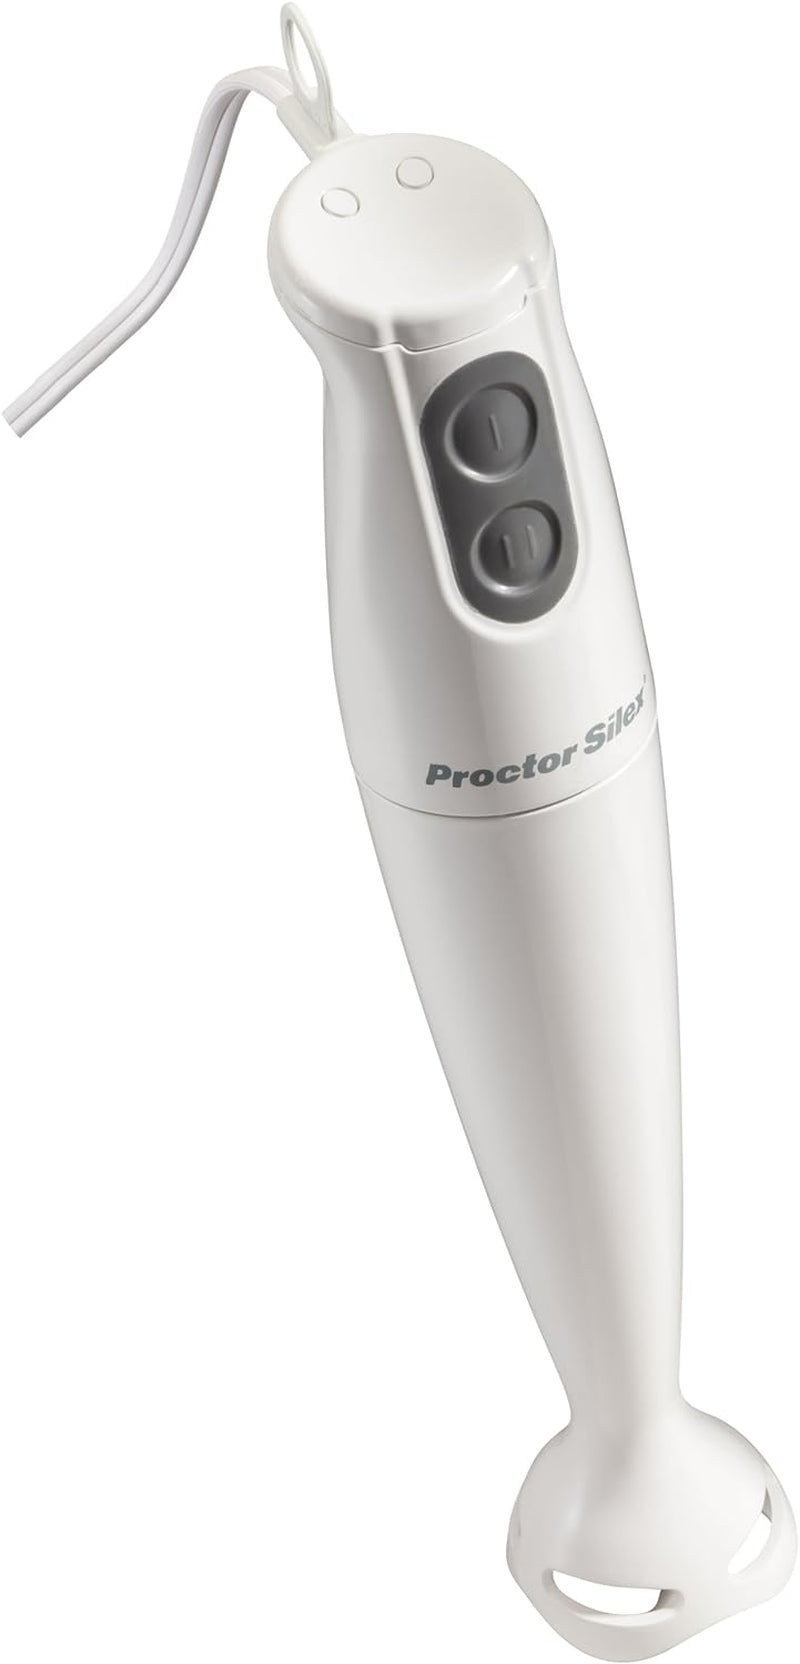 Proctor-Silex Electric Immersion Hand Blender with Detachable Dishwasher Safe Handheld Blending Stick, 2-Speeds, 150 Watts, White  Hamilton Beach White 150 Watts 